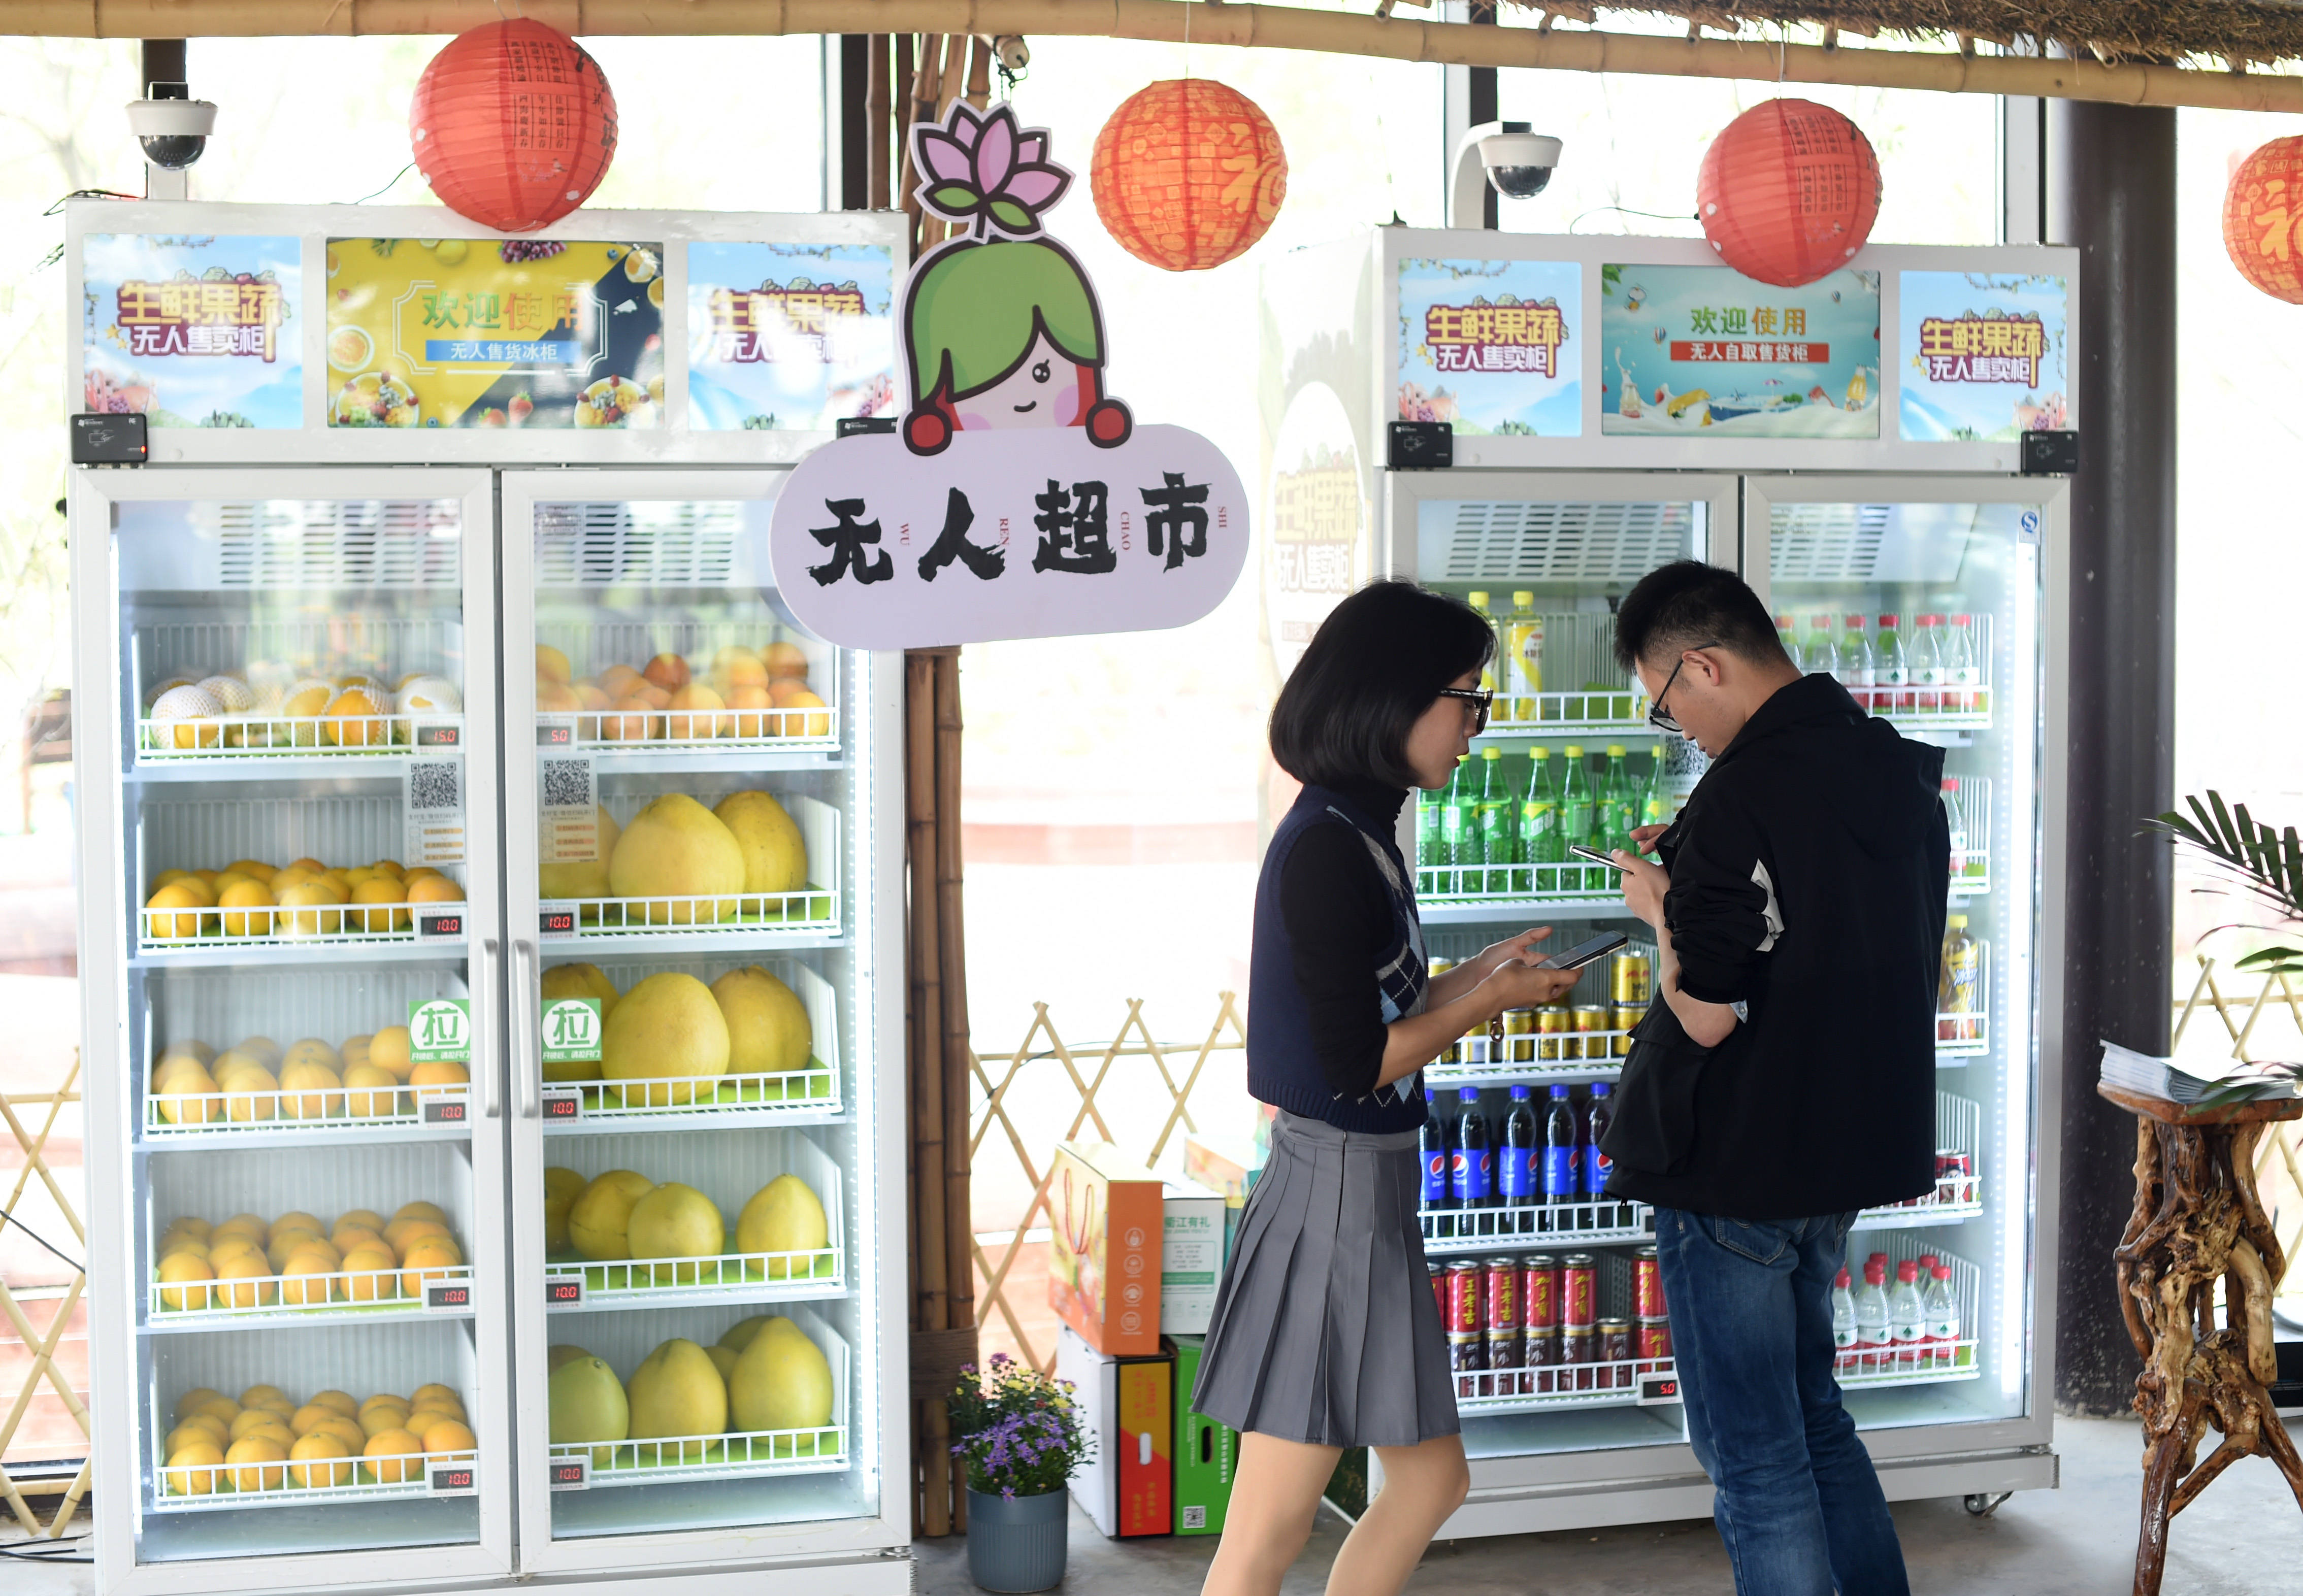 3月27日拍摄的莲花乡村国际未来社区内的无人超市.